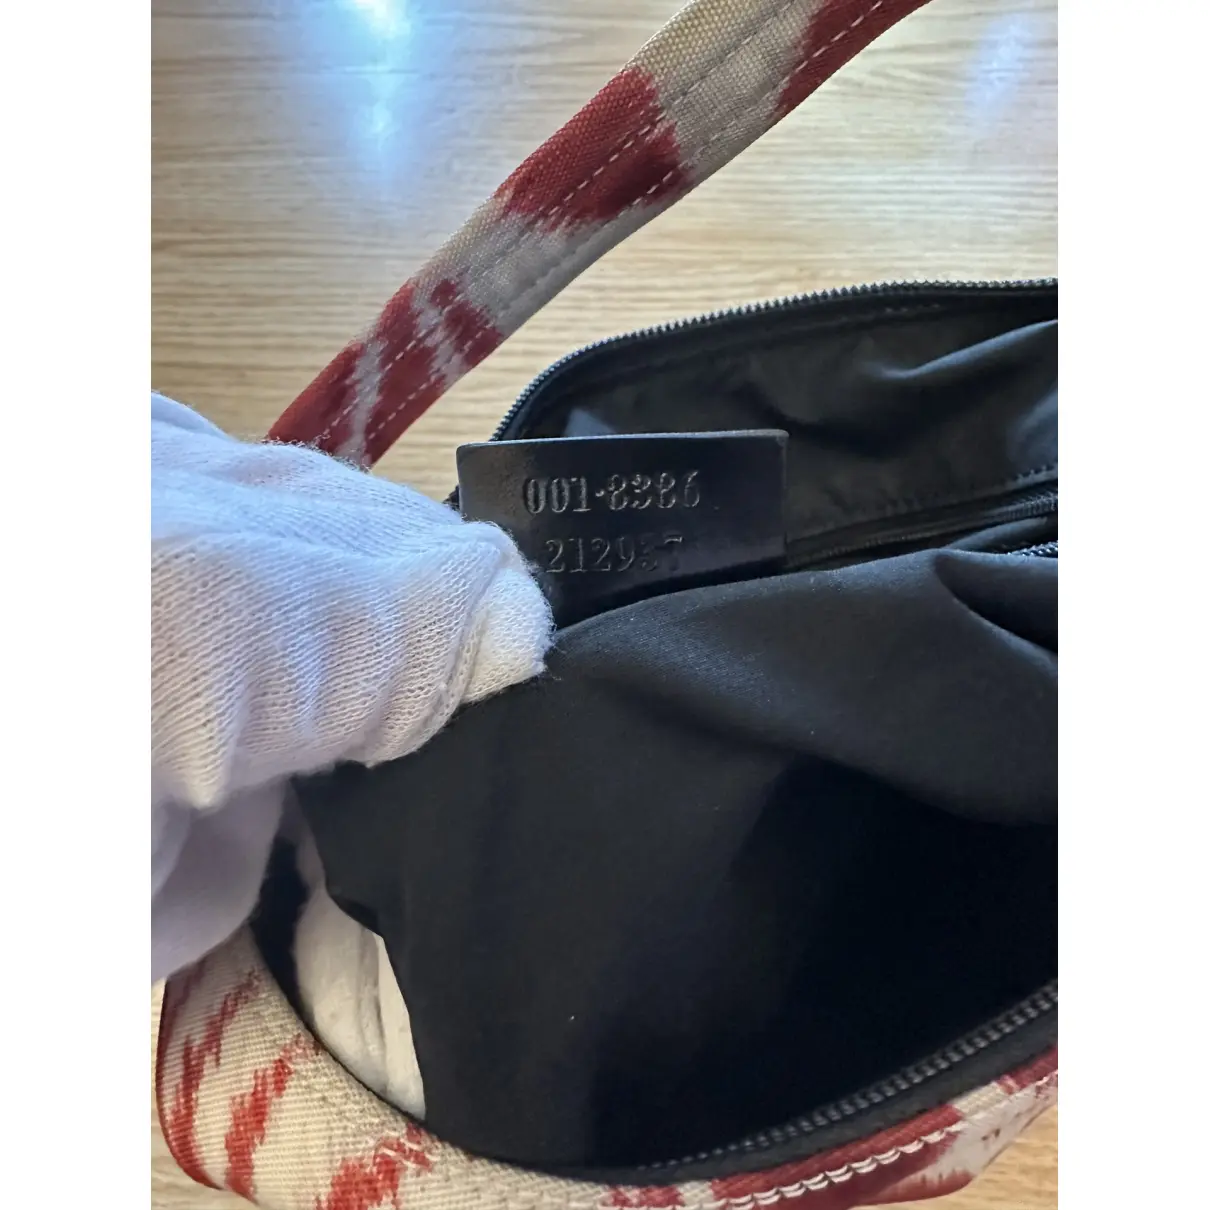 Hobo cloth handbag Gucci